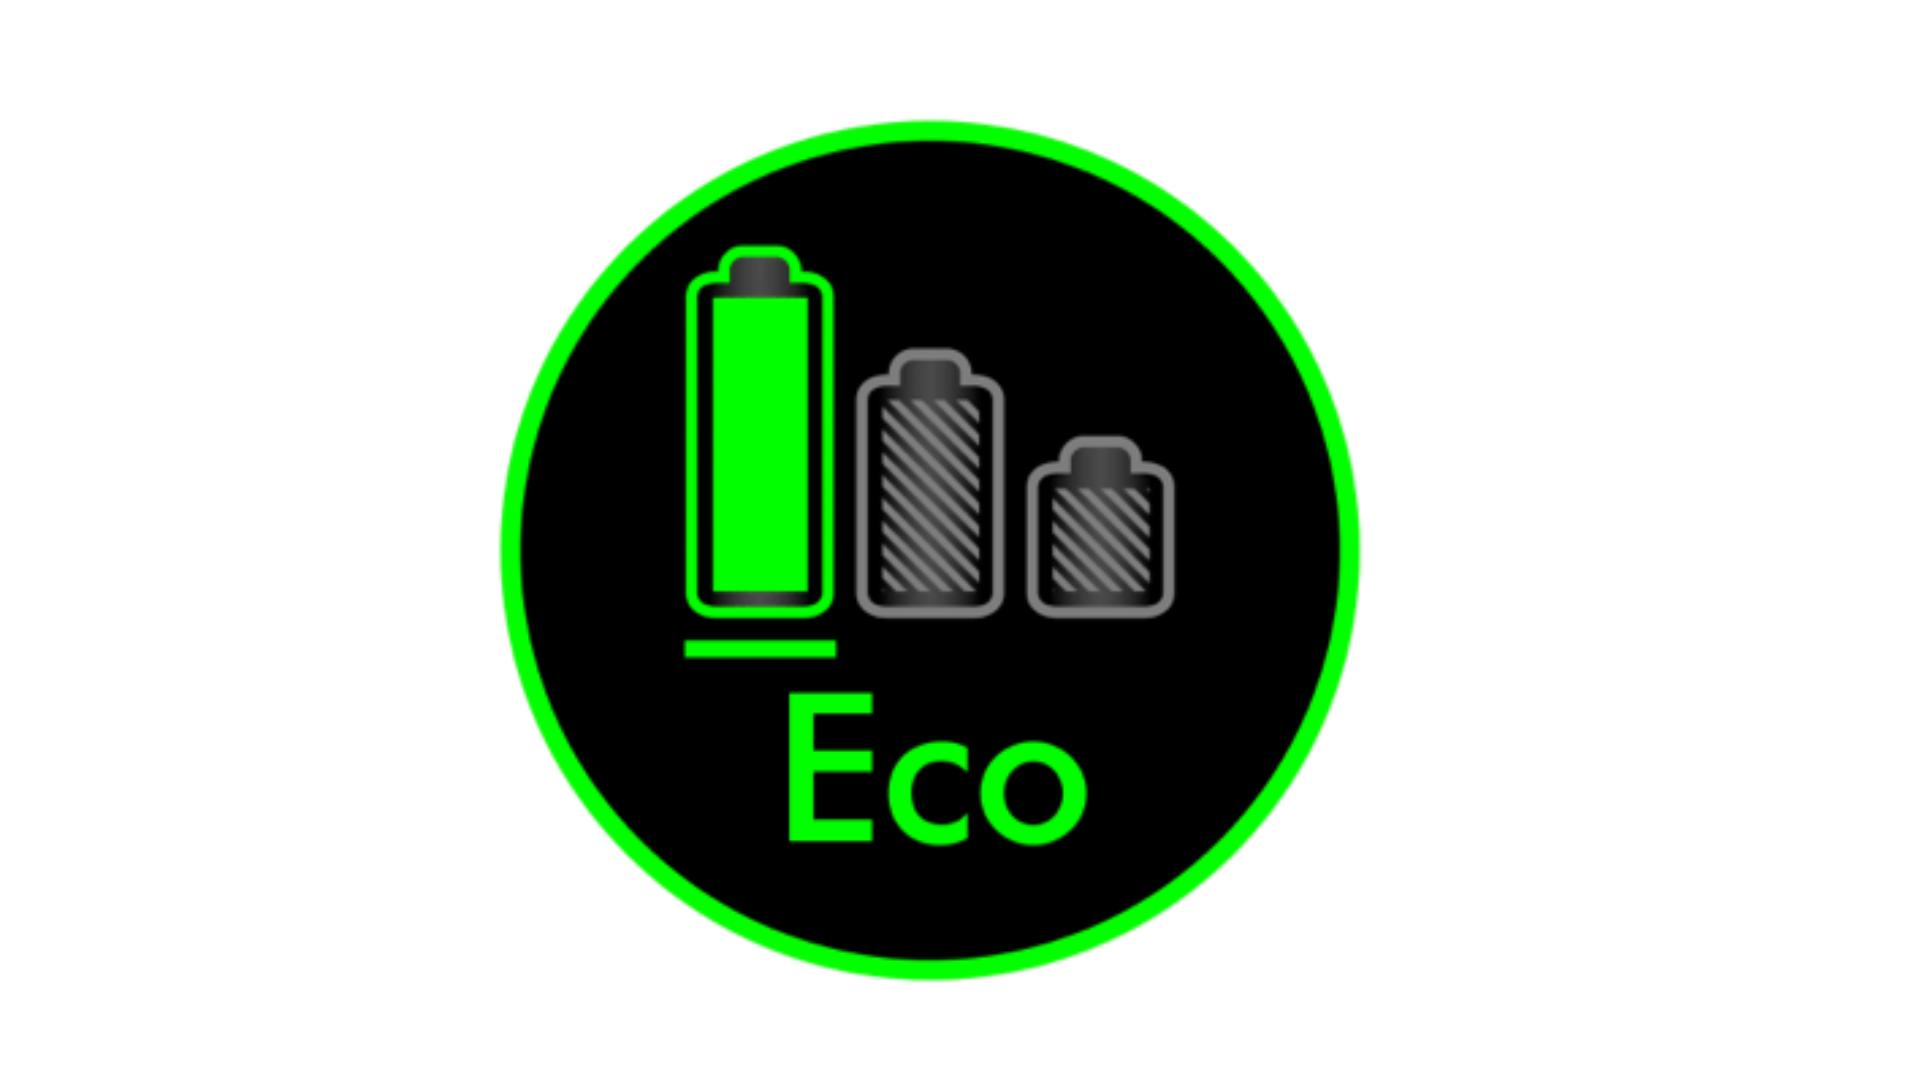 LED kijelző mutatja az Eco üzemmódot